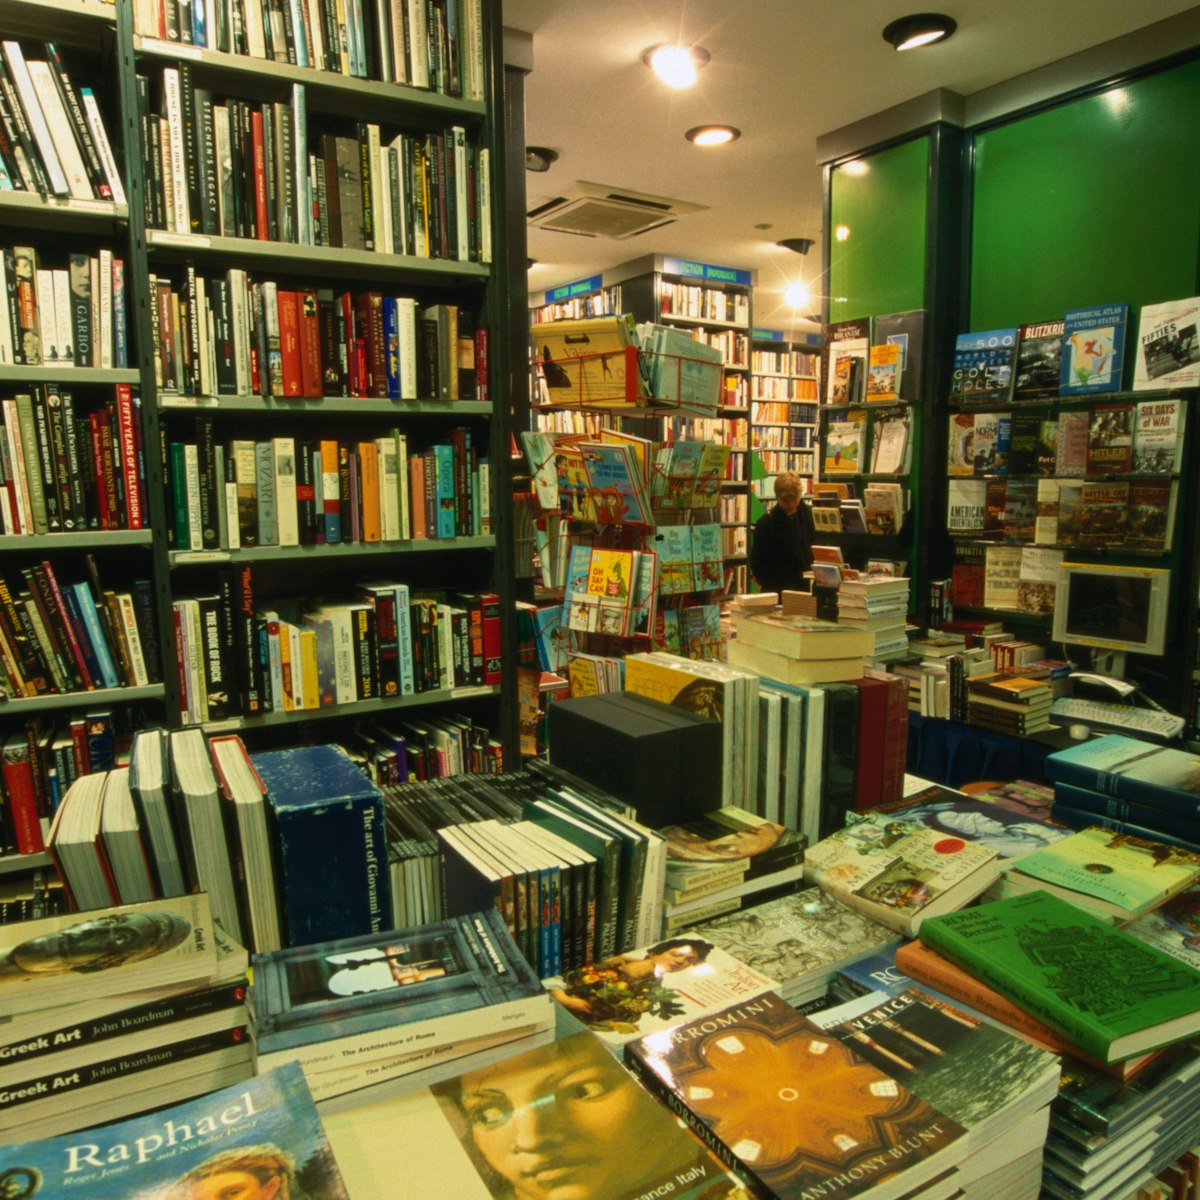 Books galore at the Anglo American bookshop on the Via della Vite 27 in Rome.